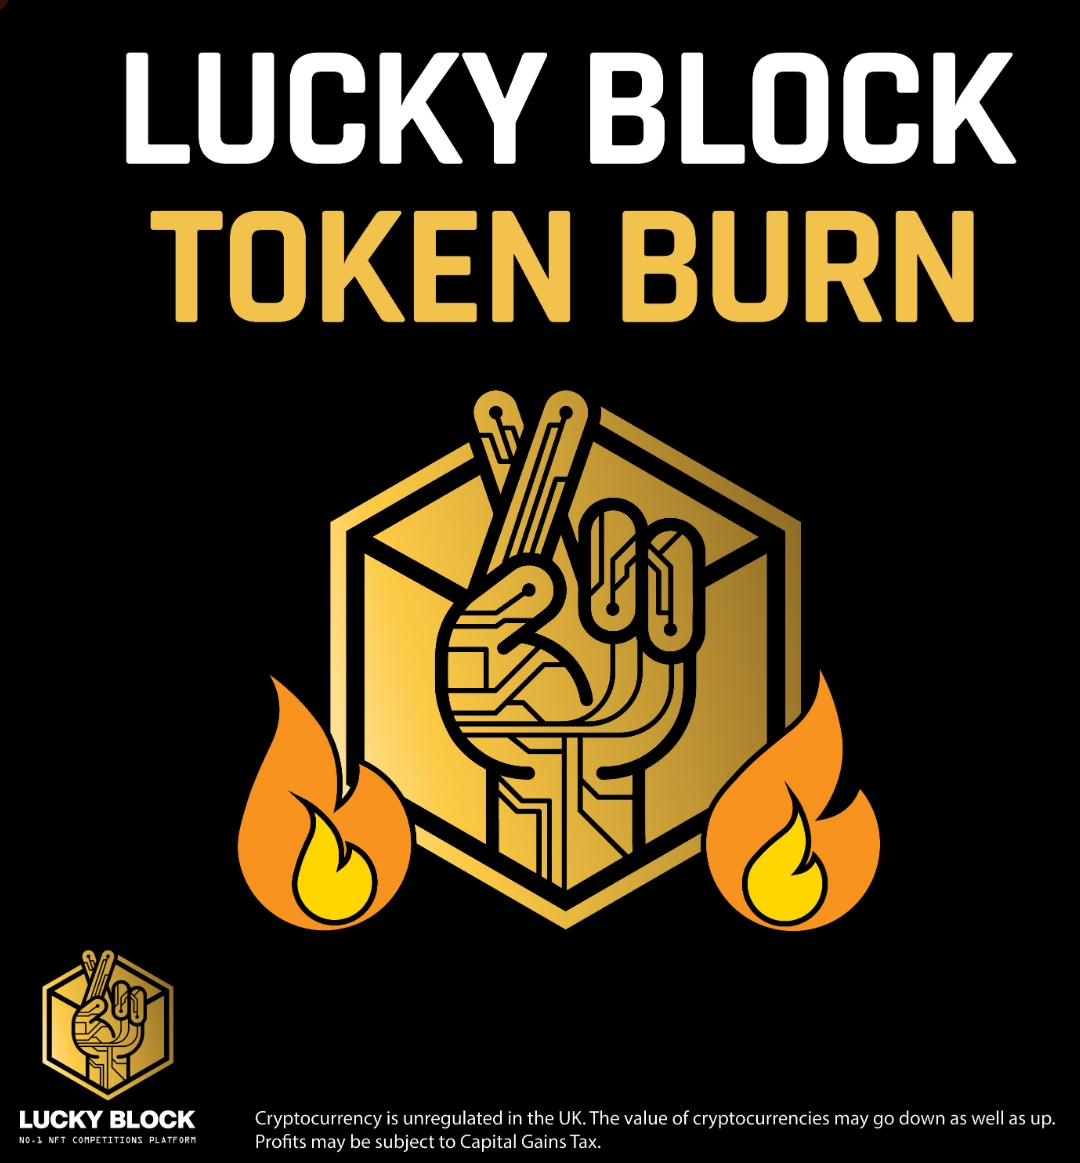 LBLOCK token burn